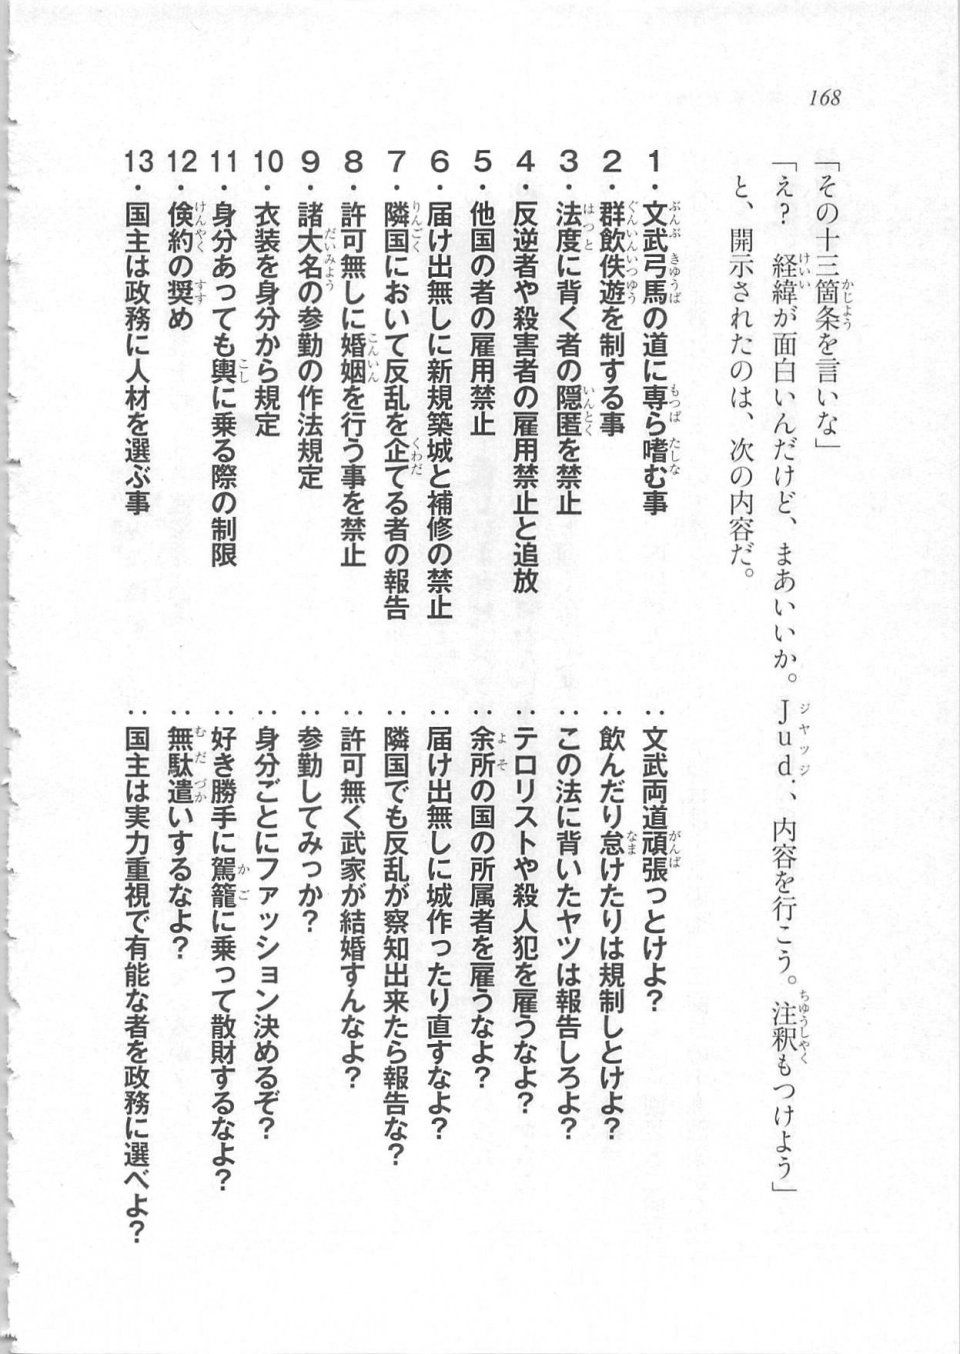 Kyoukai Senjou no Horizon LN Sidestory Vol 3 - Photo #172